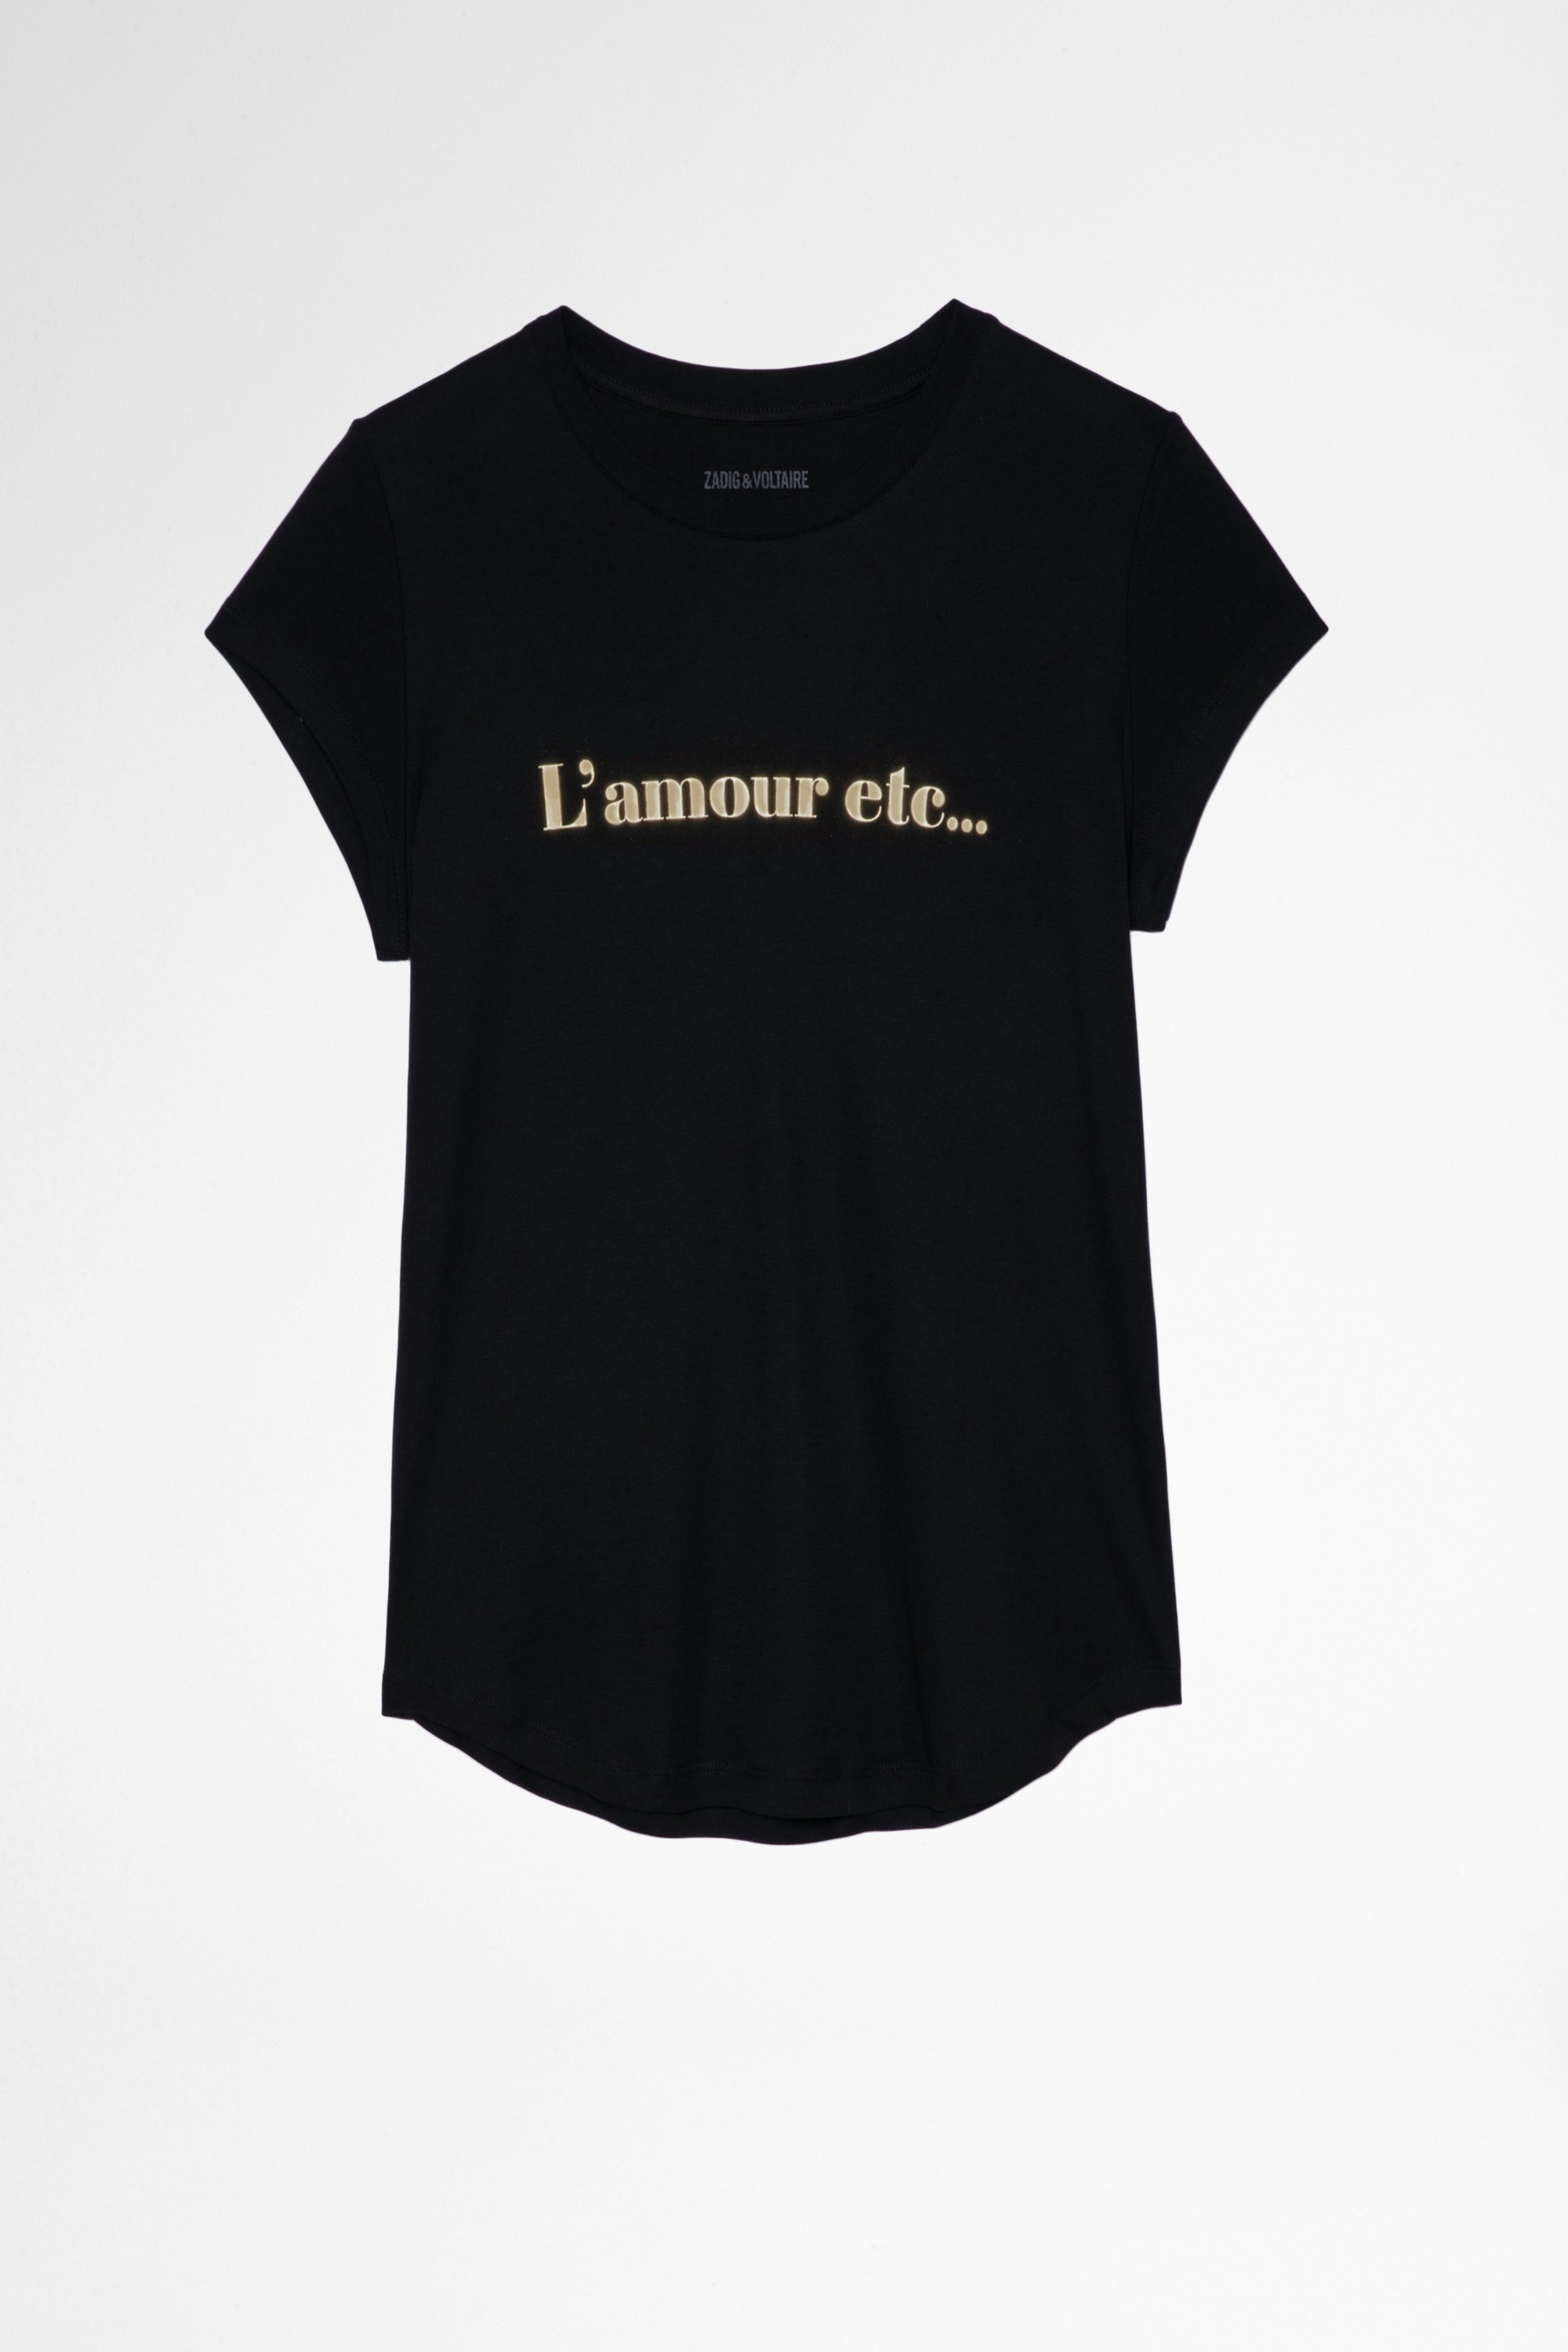 T-shirt Woop L‘Amour etc Damen-T-Shirt aus weißer Baumwolle mit Printmotiv Love etc. Hergestellt mit Fasern aus biologischem Anbau